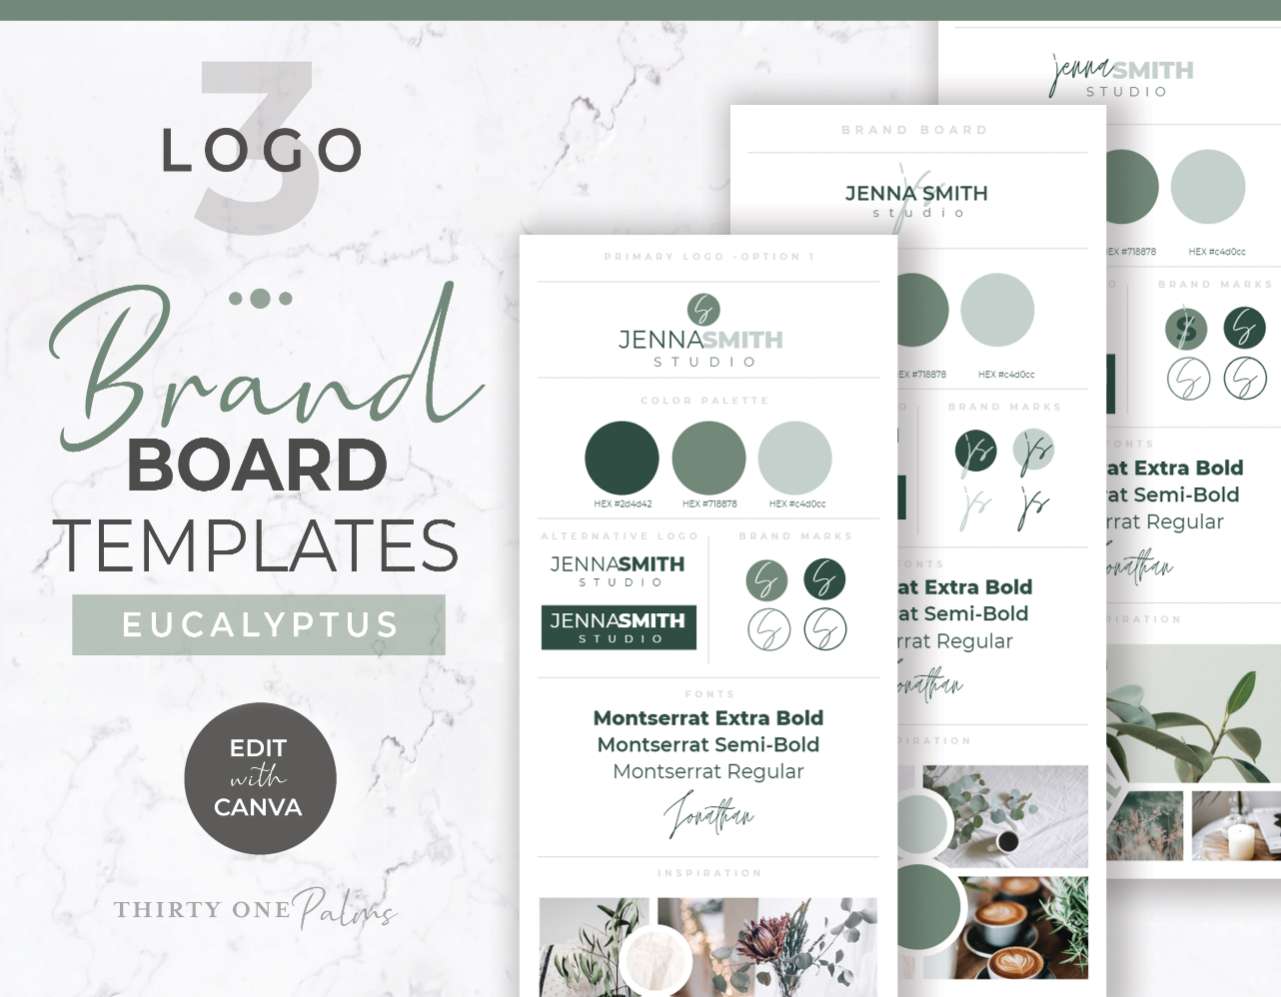 Brand Board Templates & Logos for Canva – Eucalyptus